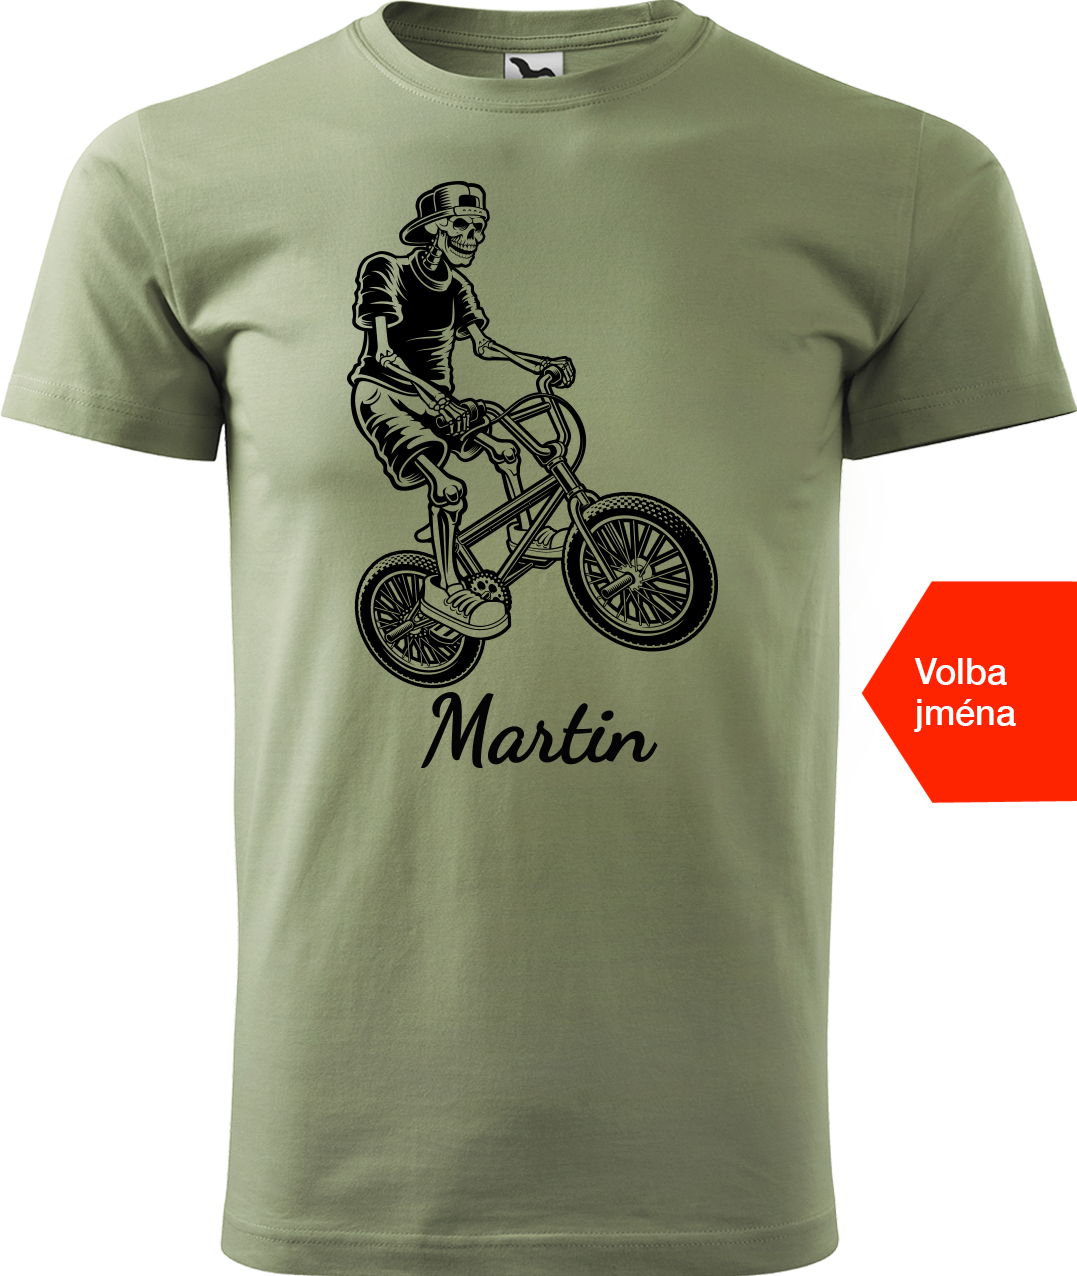 Pánské tričko s kolem a jménem - Trial Bike Velikost: M, Barva: Světlá khaki (28)